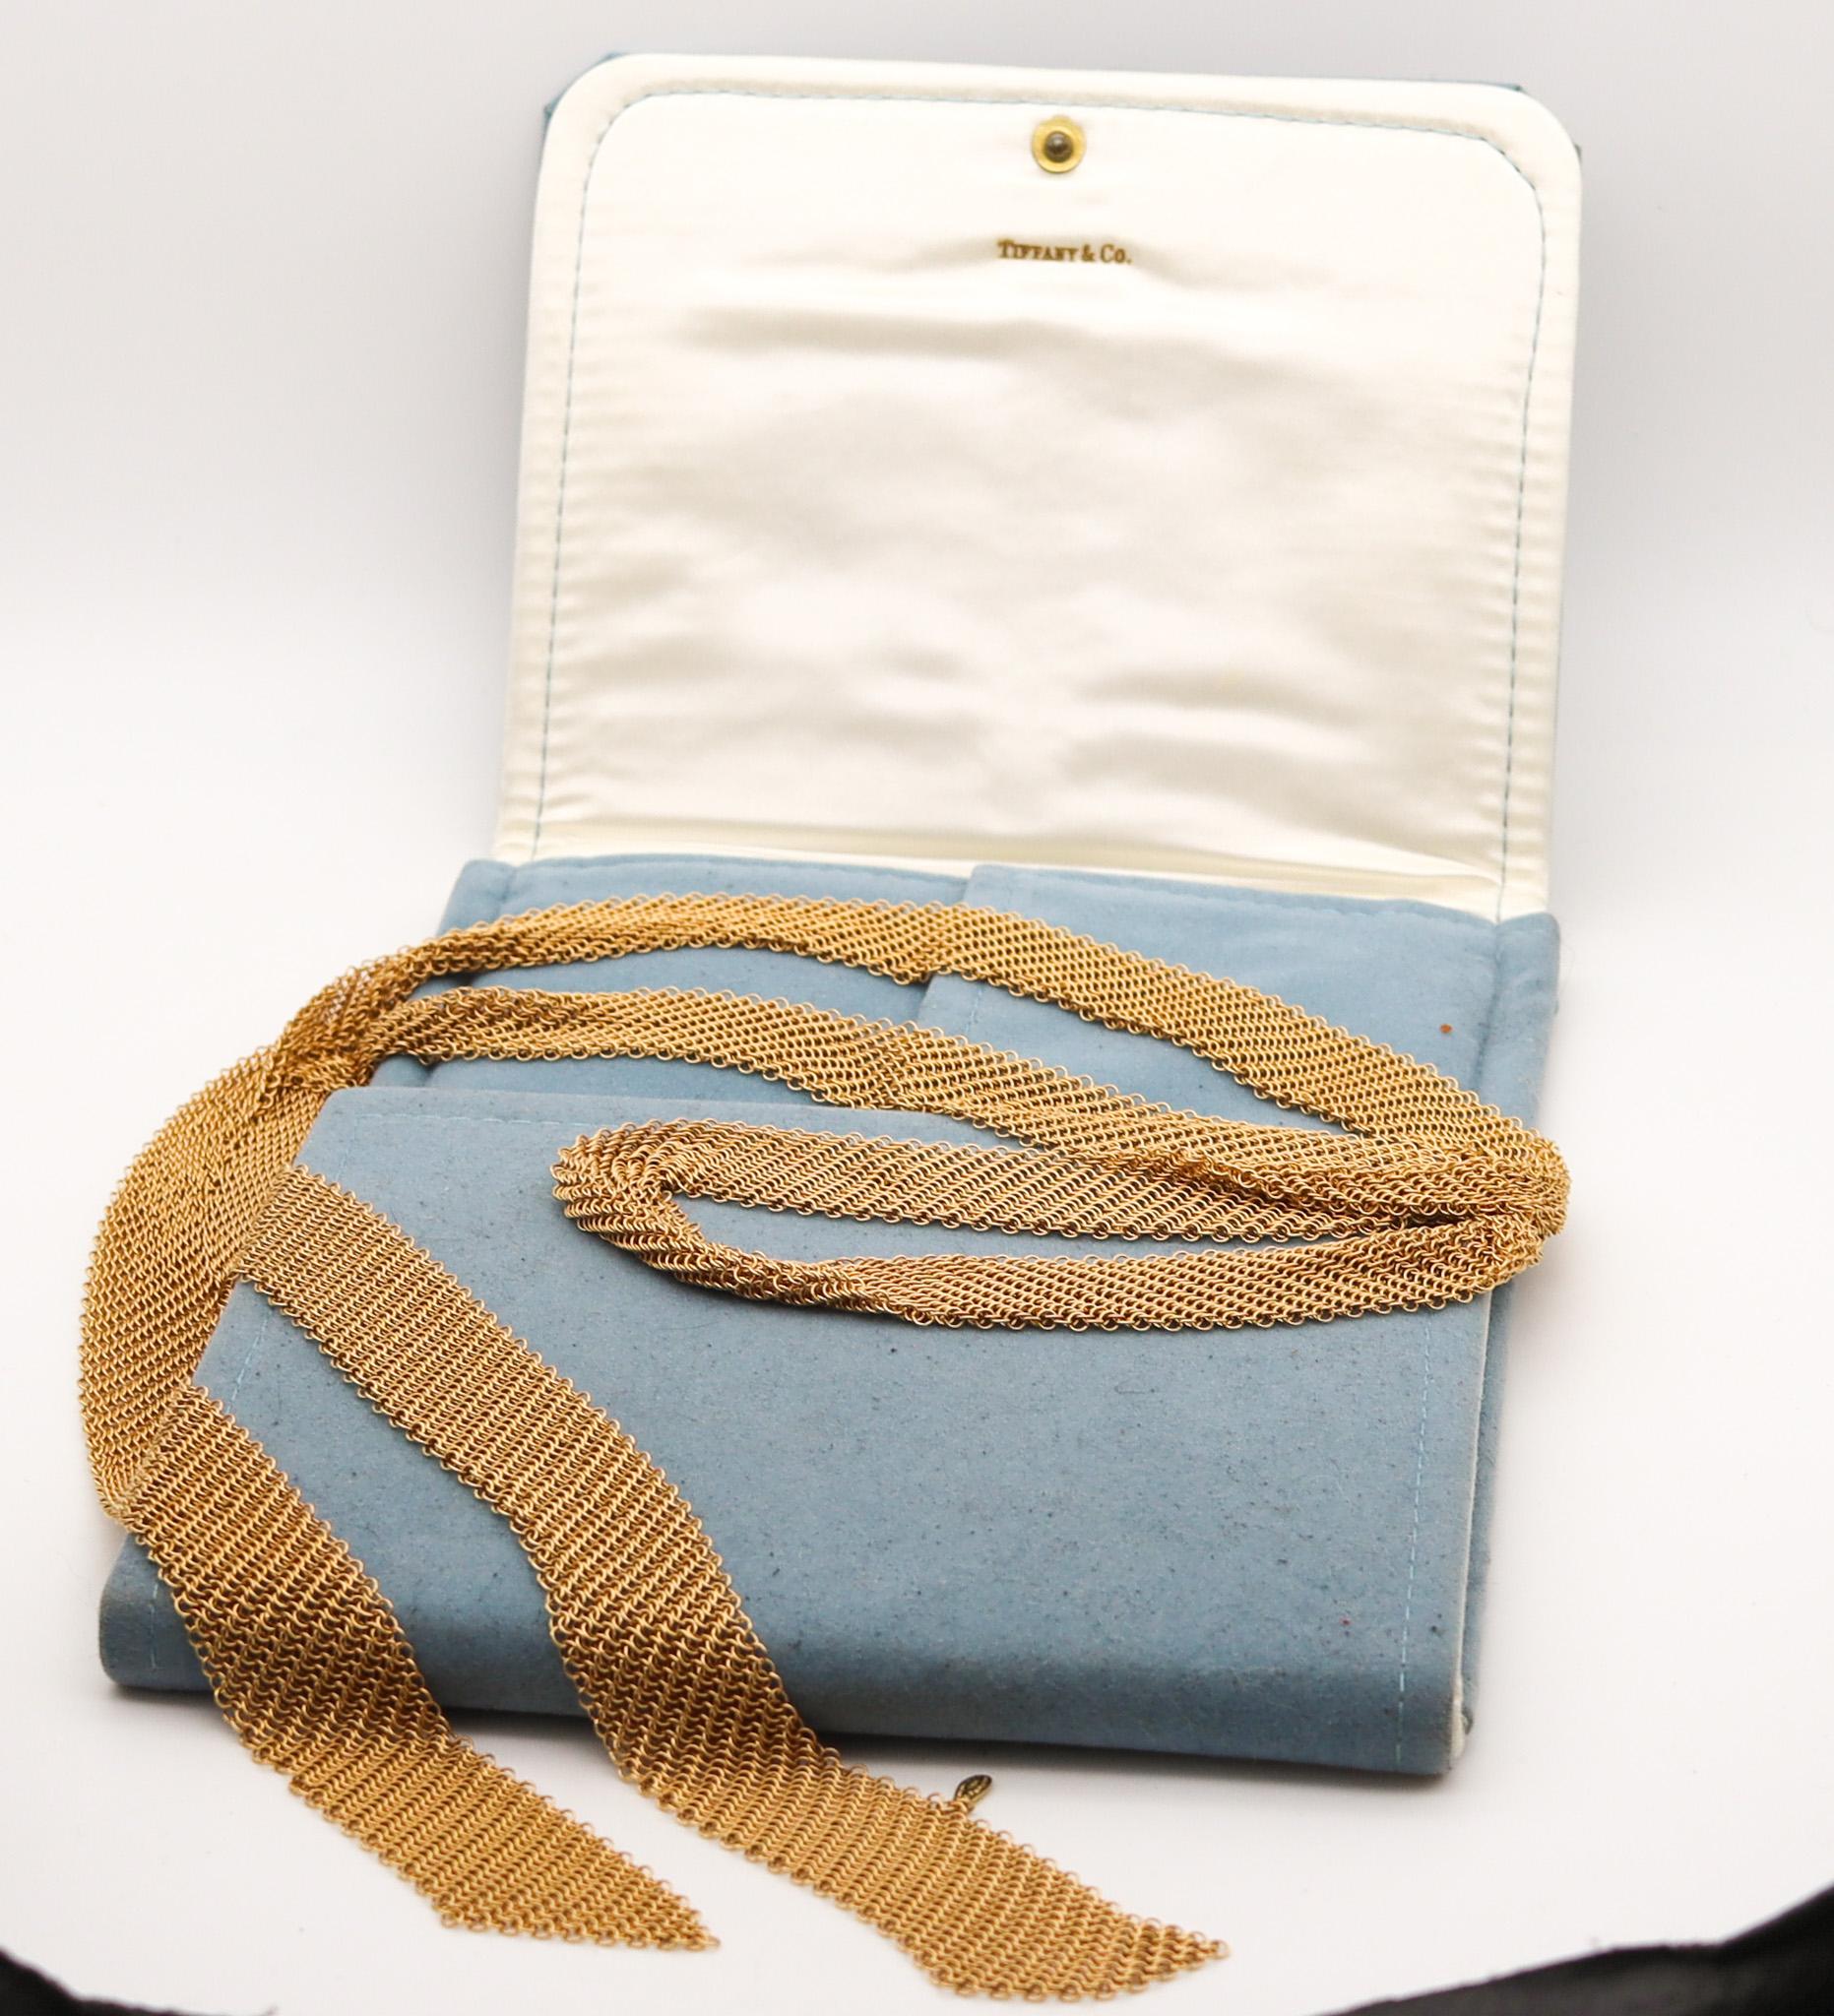 Collier drapé en maille conçu par Elsa Peretti (1940-2019) pour Tiffany & Co.

Ce collier iconique en forme de foulard en maille est l'une des créations les plus emblématiques de Peretti qu'elle a réalisées pour les studios Tiffany dans les années